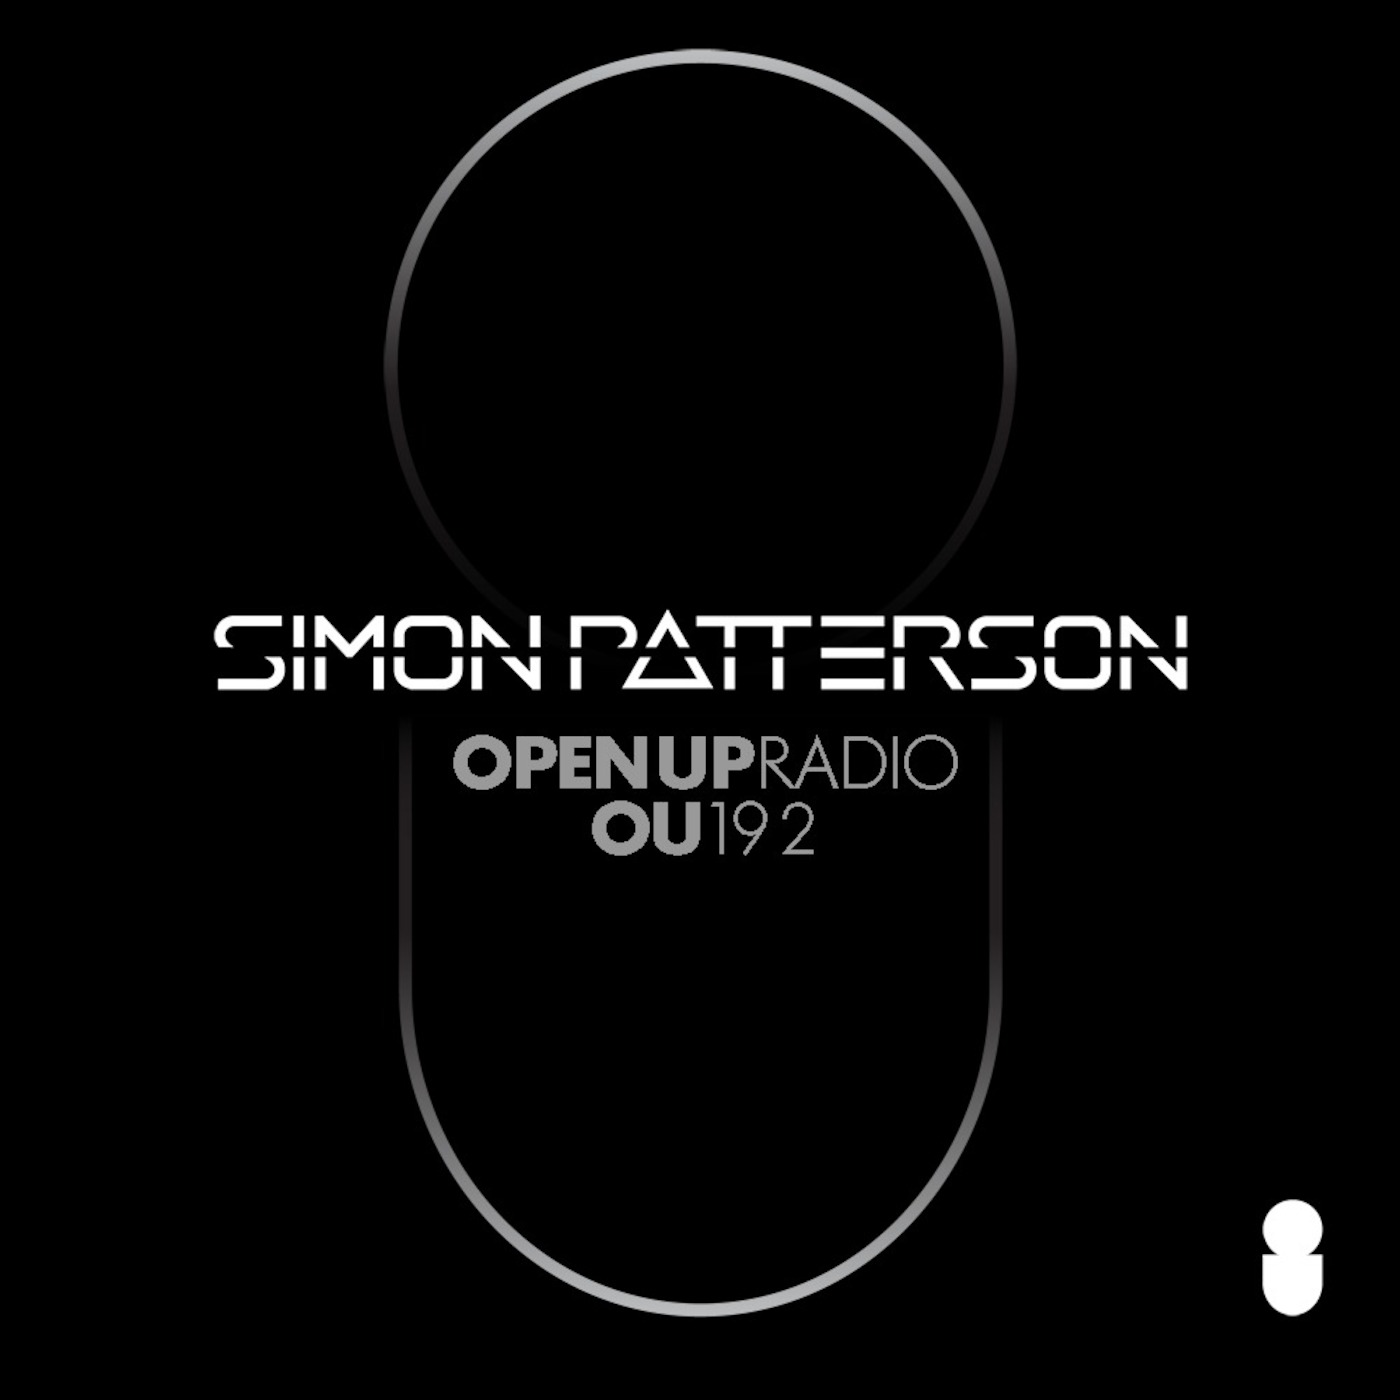 Simon Patterson - Open Up - 192